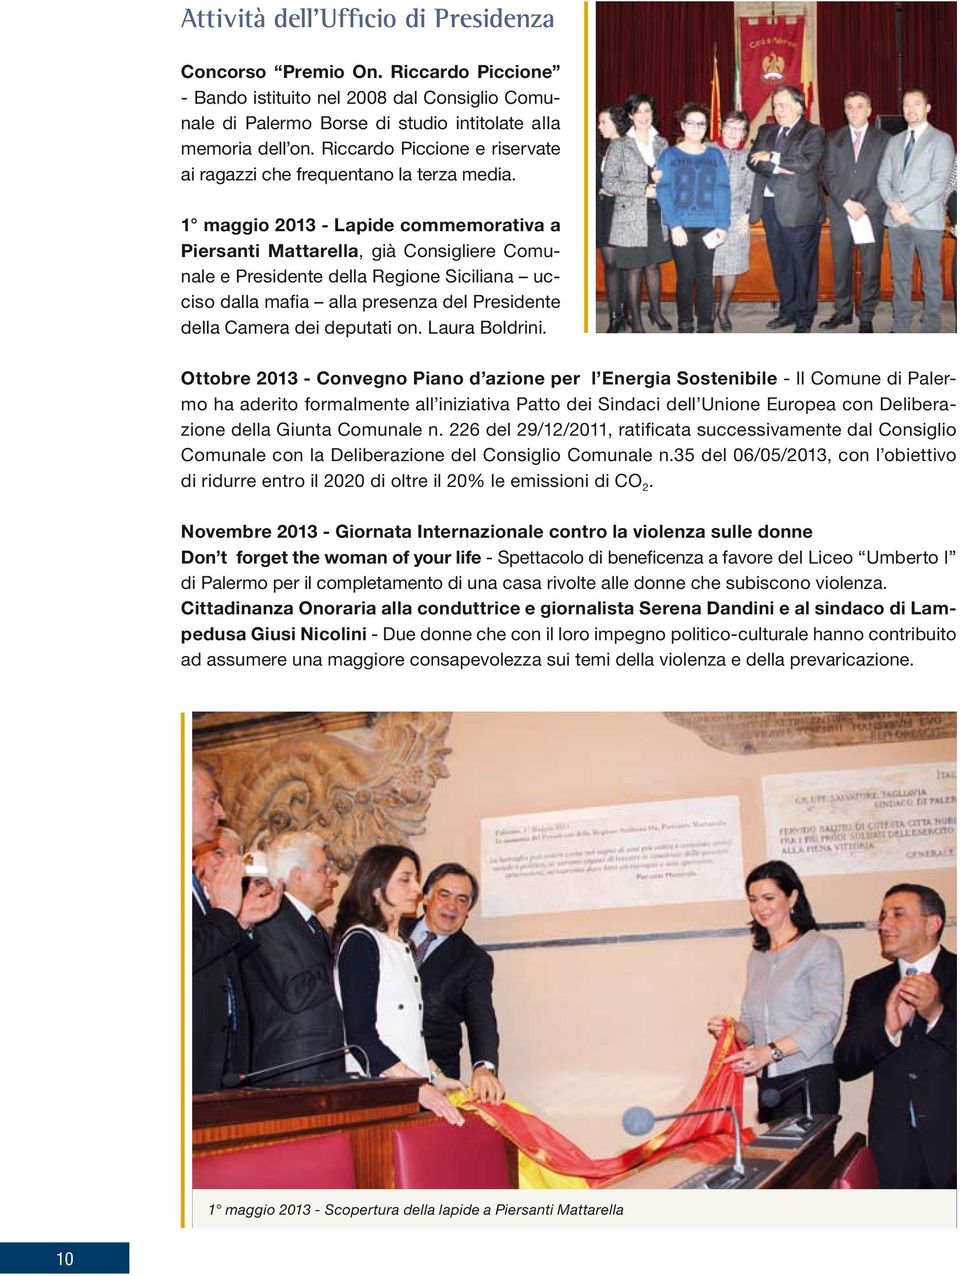 1 maggio 2013 - Lapide commemorativa a Piersanti Mattarella, già Consigliere Comunale e Presidente della Regione Siciliana ucciso dalla mafia alla presenza del Presidente della Camera dei deputati on.